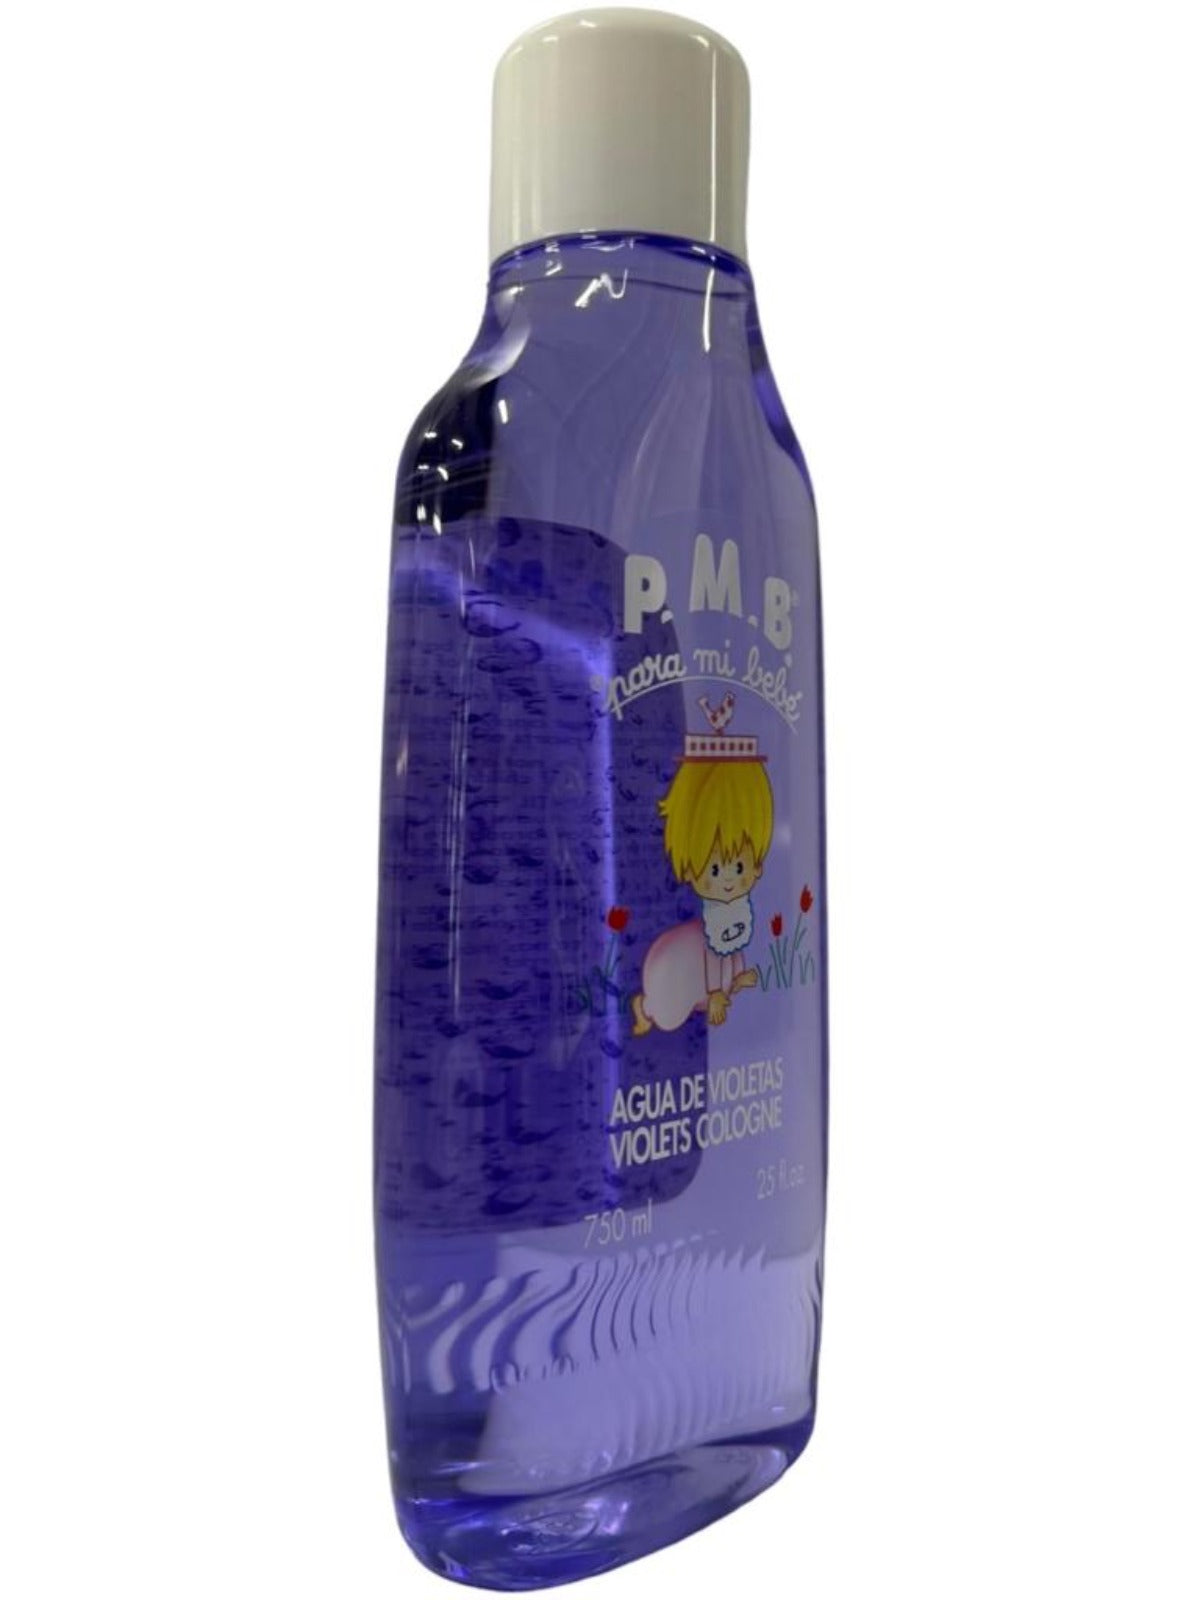 Para Mi Bebe Agua De Violetas Violets Cologne 750ml